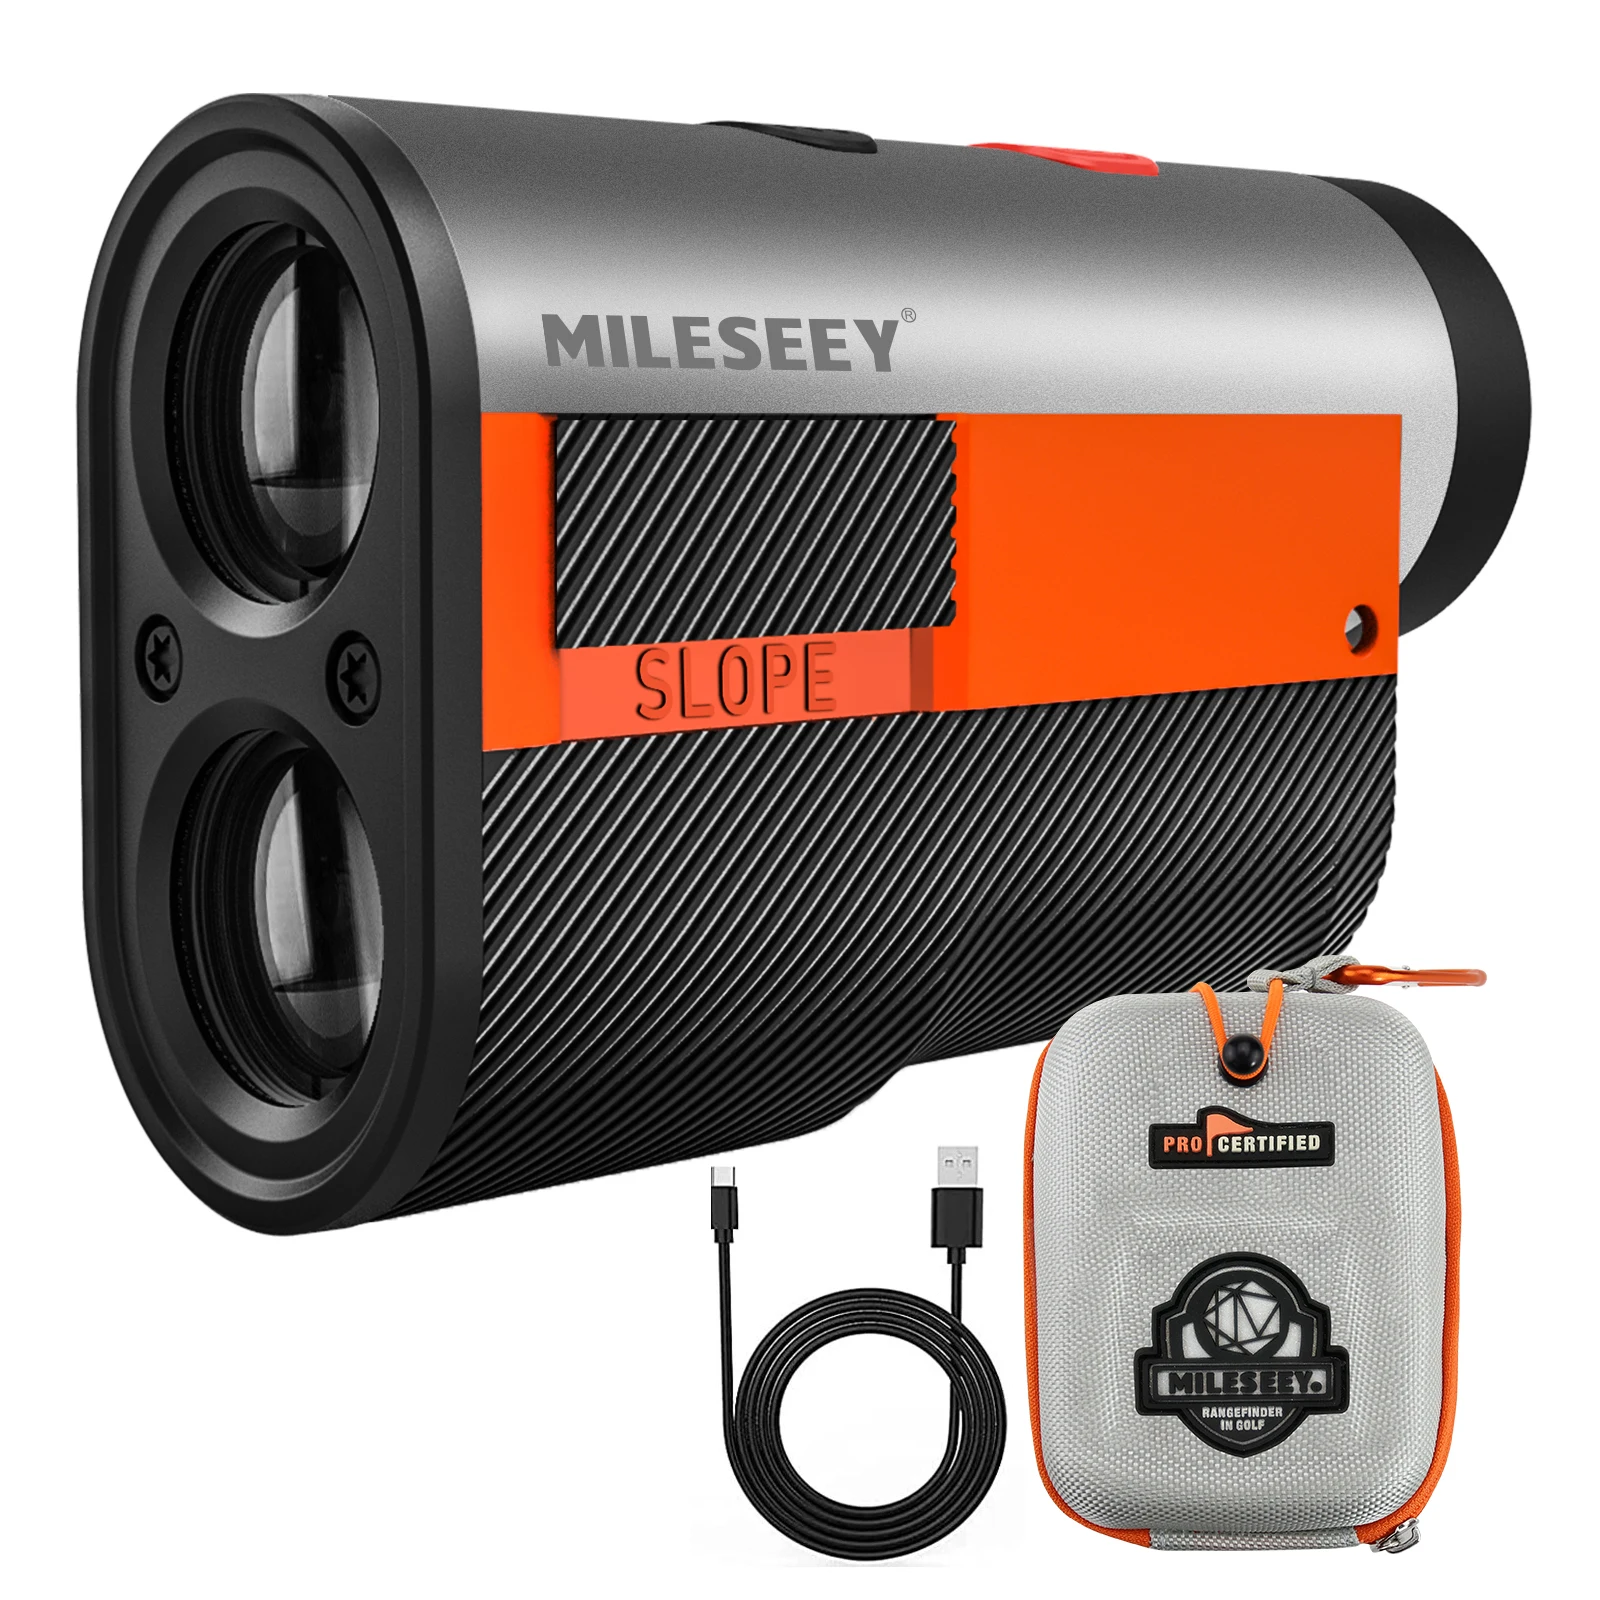 

Mileseey GPF12 Slope Switch Golf Laser Range Finder Laser Rangefinder